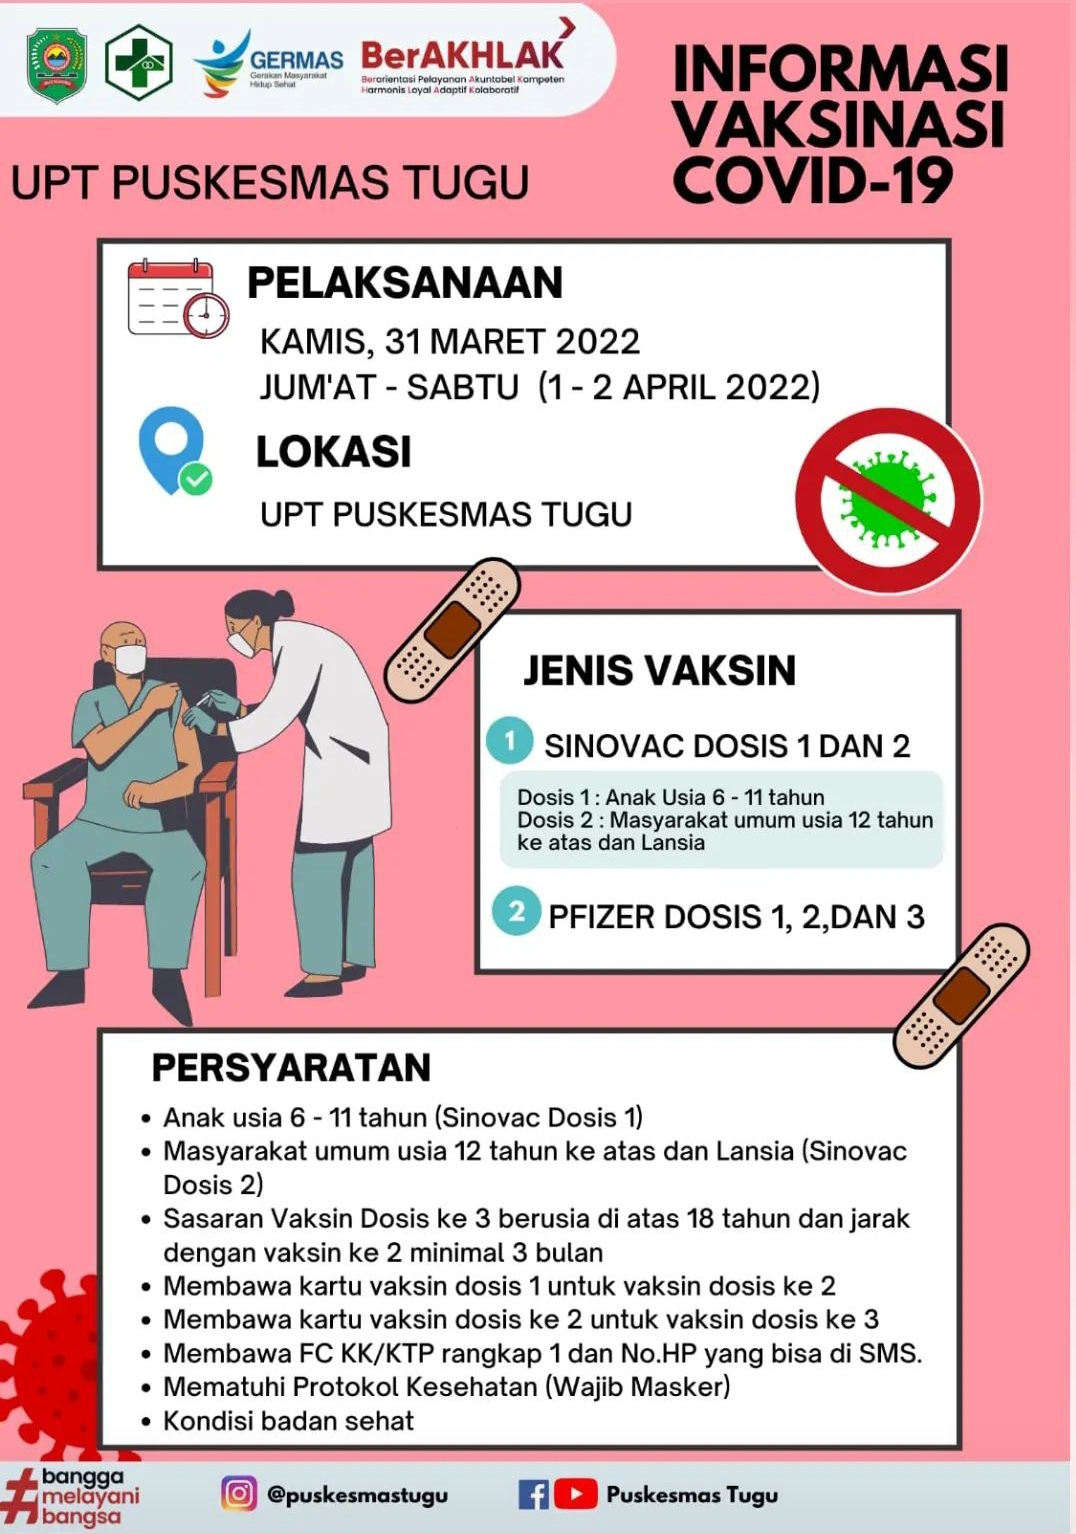 Jadwal Vaksin Covid-19 di Kecamatan Tugu